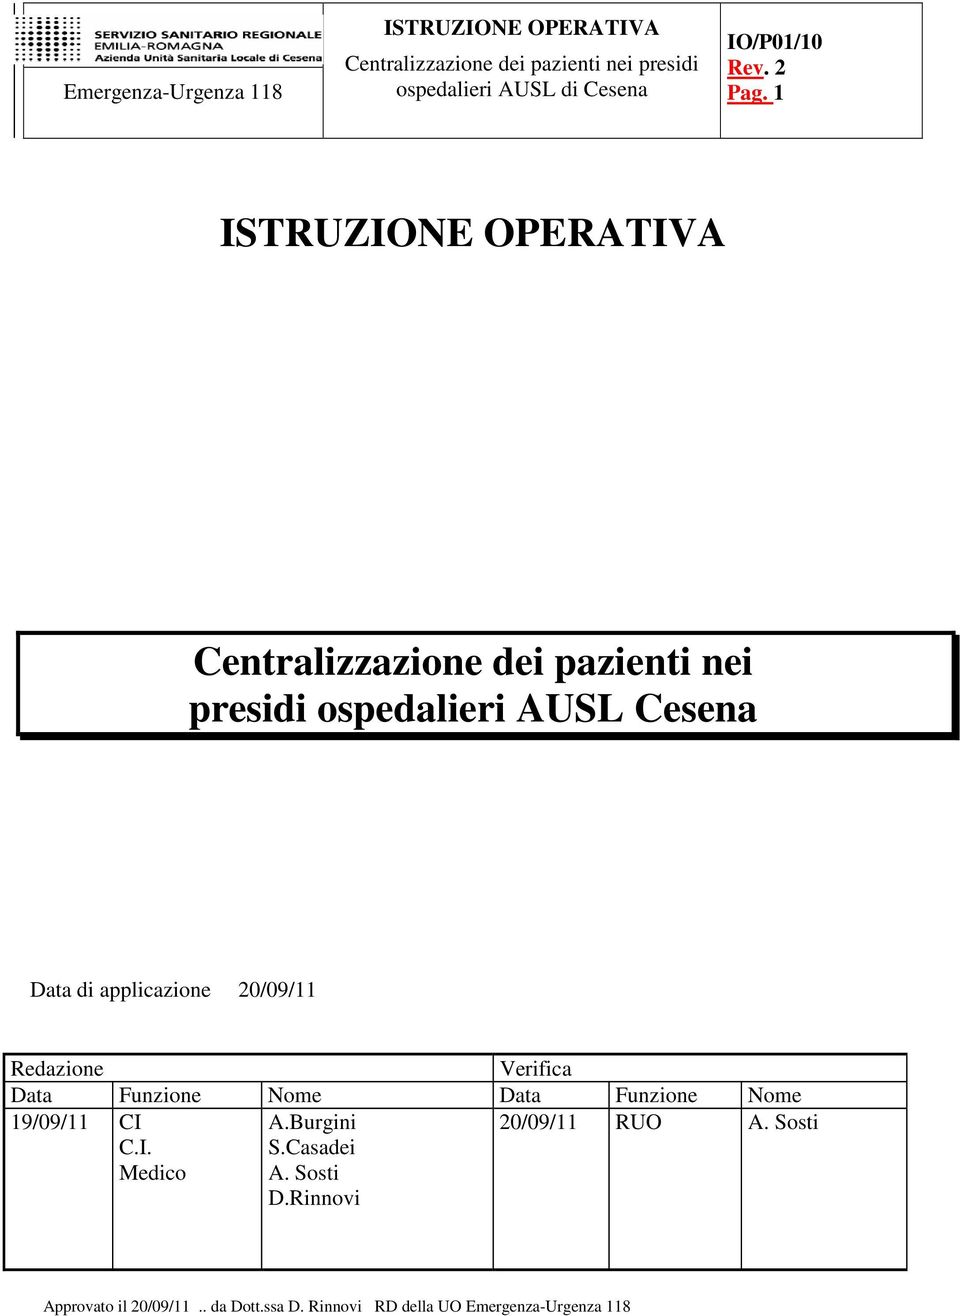 19/09/11 CI C.I. Medico A.Burgini S.Casadei A. Sosti D.Rinnovi 20/09/11 RUO A.